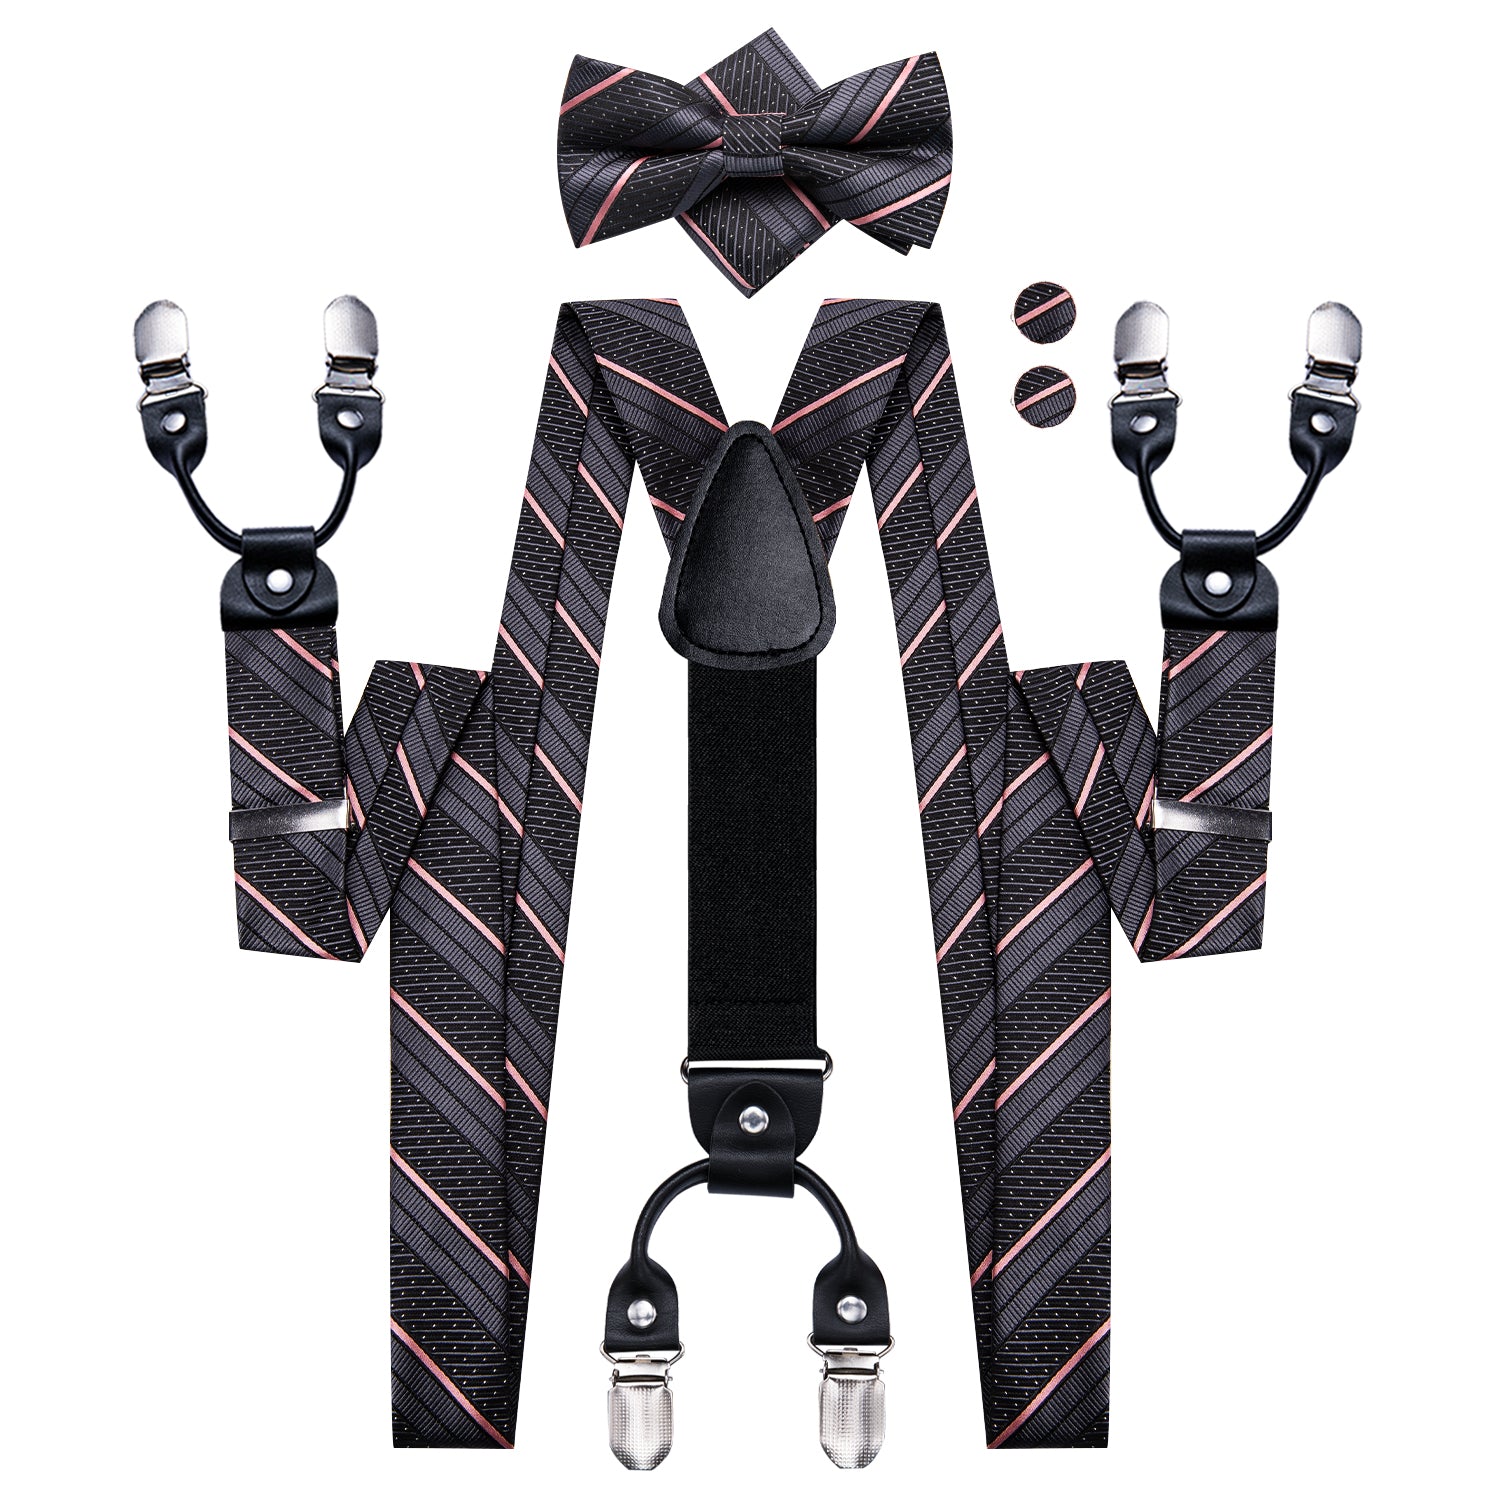 Pink Black Striped Suspender Bowtie Hanky Cufflinks Set